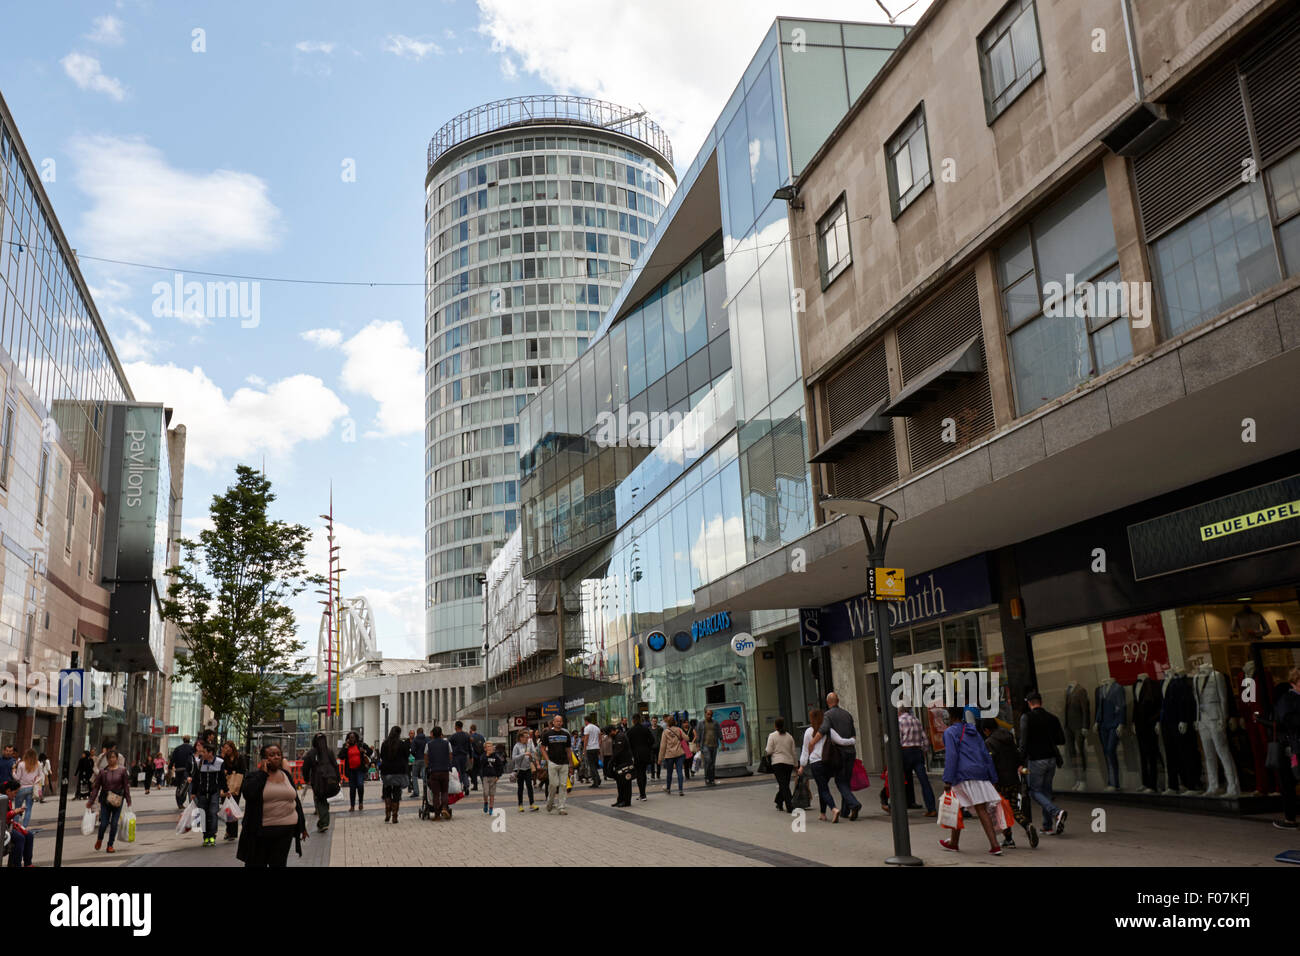 Birmingham city centre high street shopping area menant à l'arène UK Banque D'Images